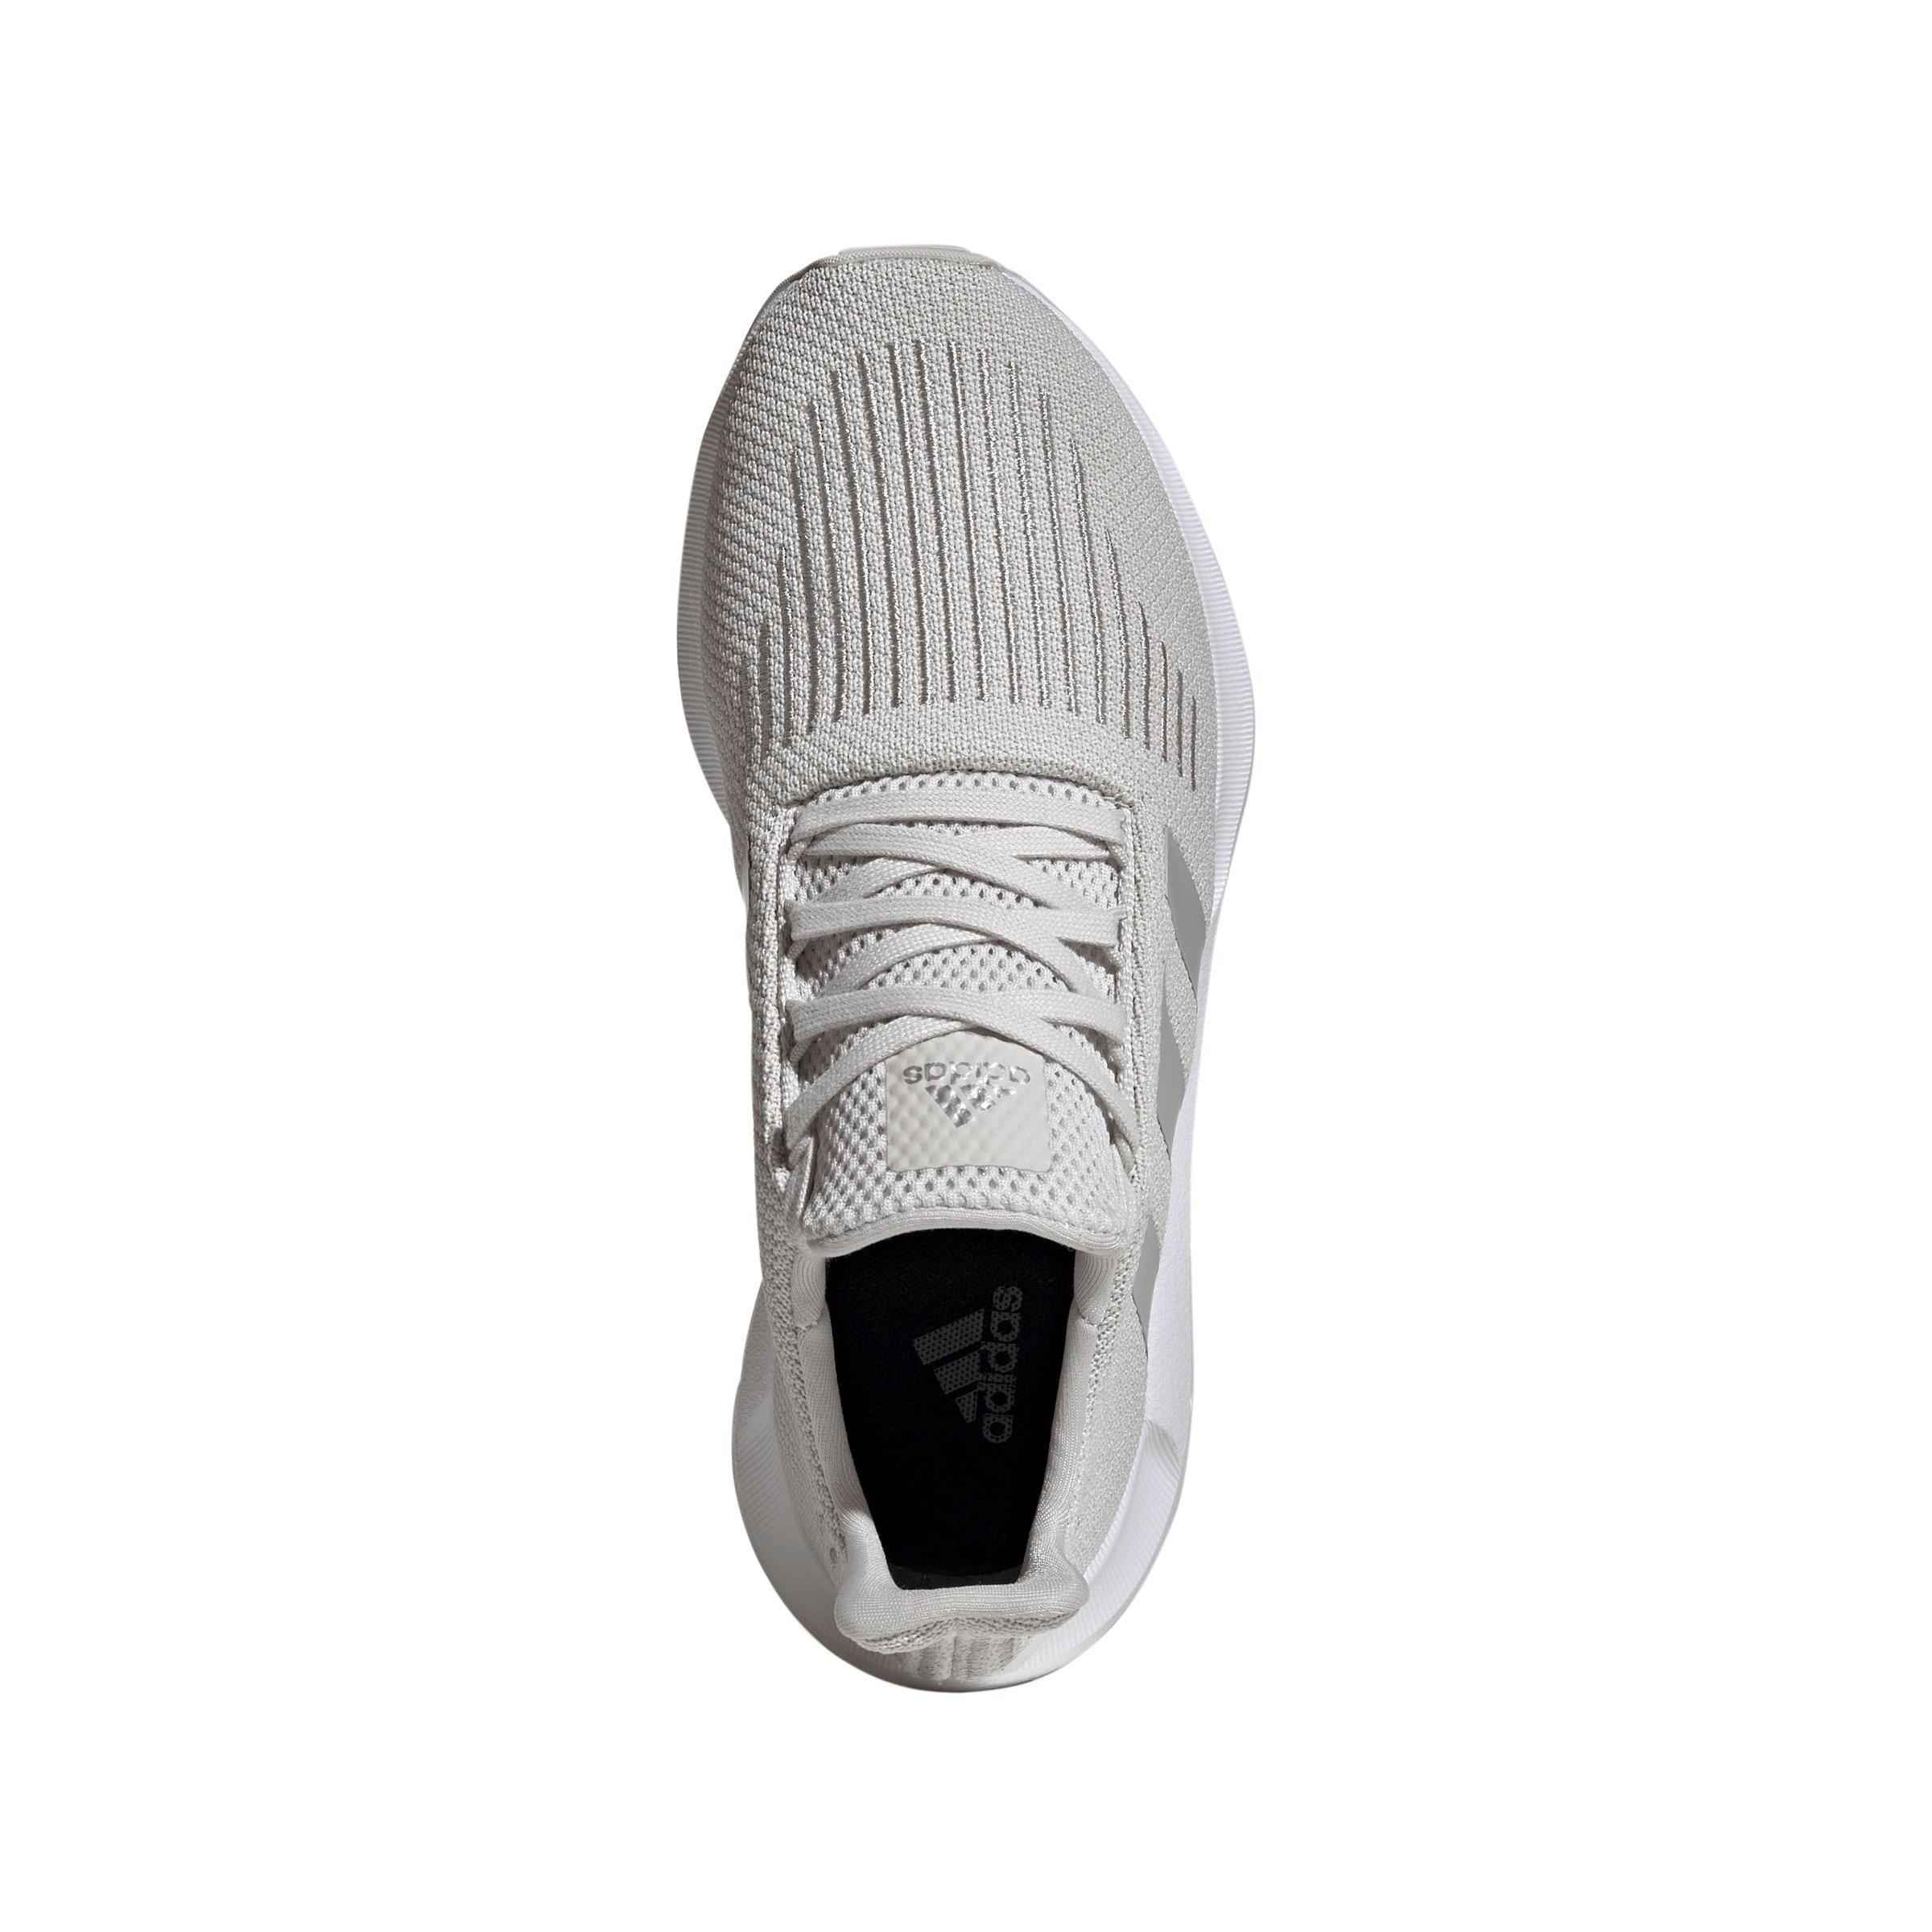 adidas Swift Run 1.0 "Grey Two/Silver Metallic" Women's Running Shoe